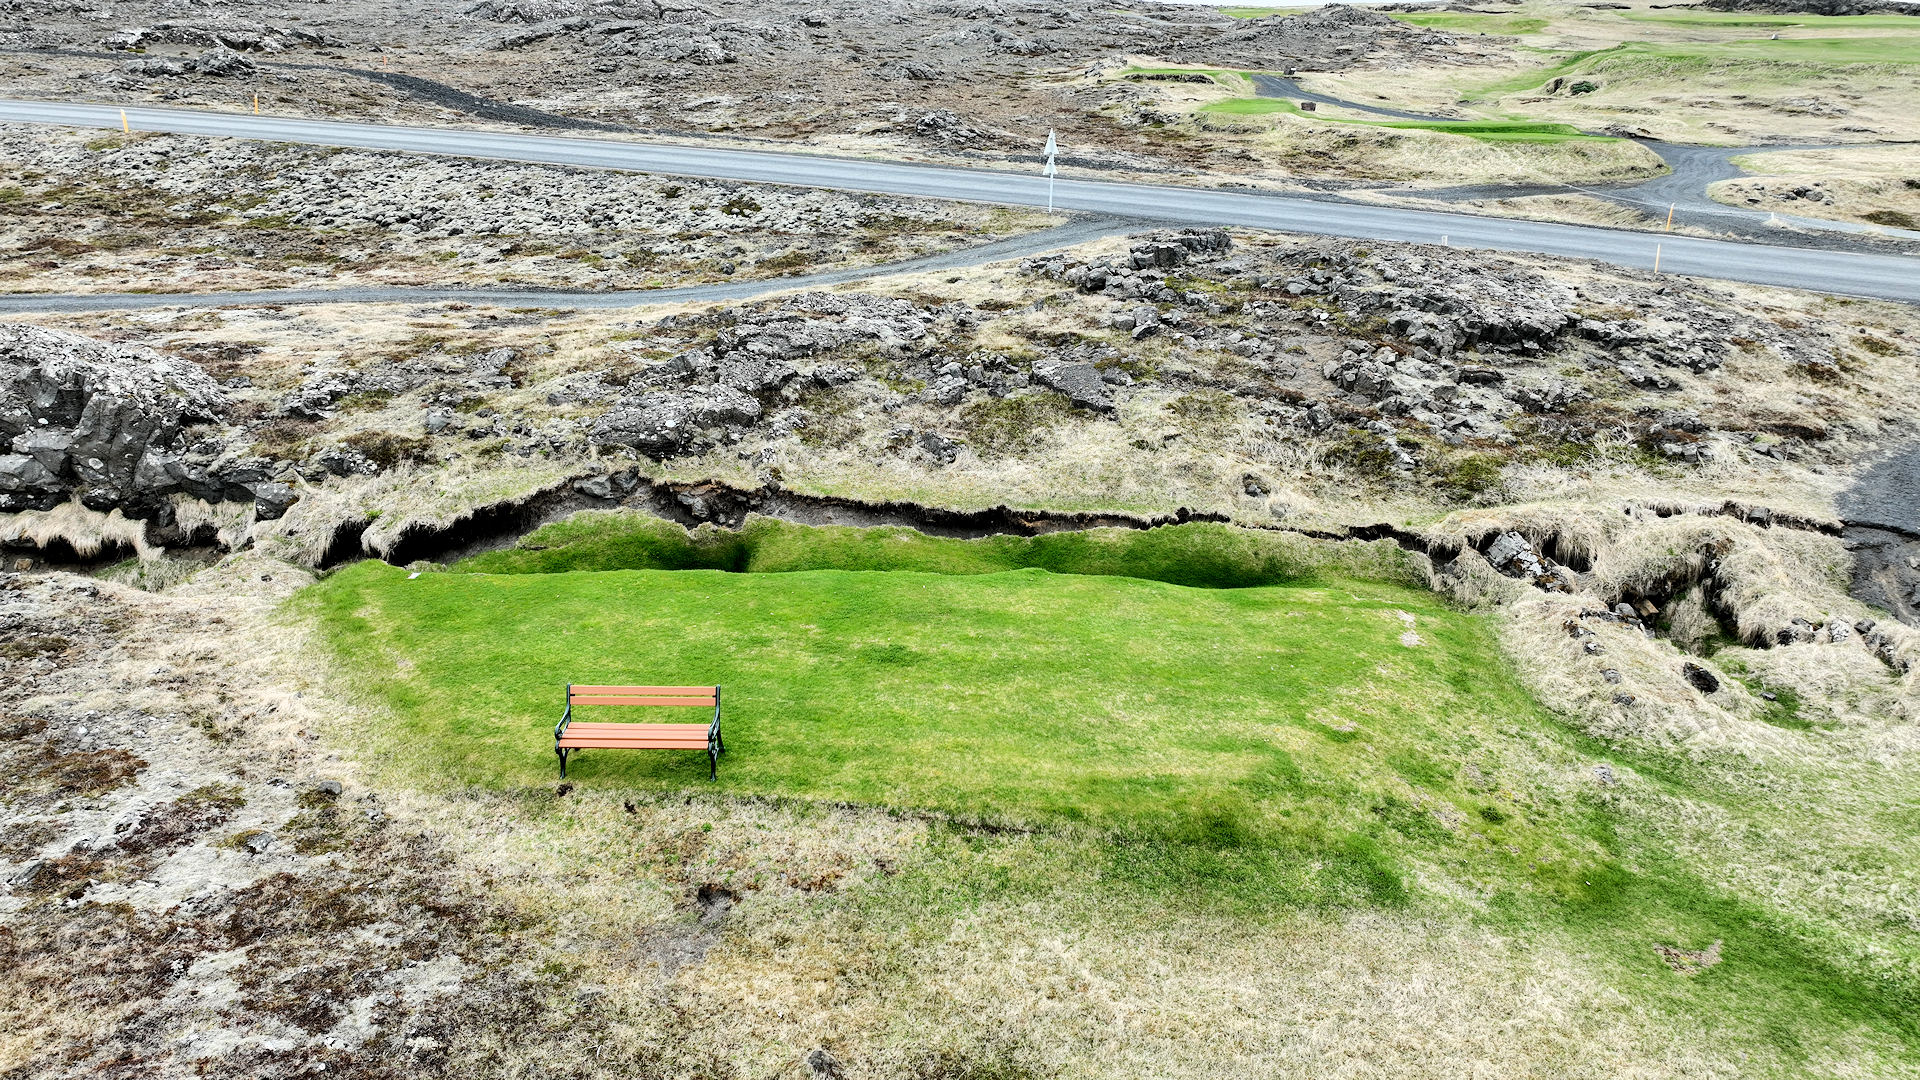 Grüner Rasen mit Parkbank und Riss in der Erde wegen Erdbeben in Grindavik Island